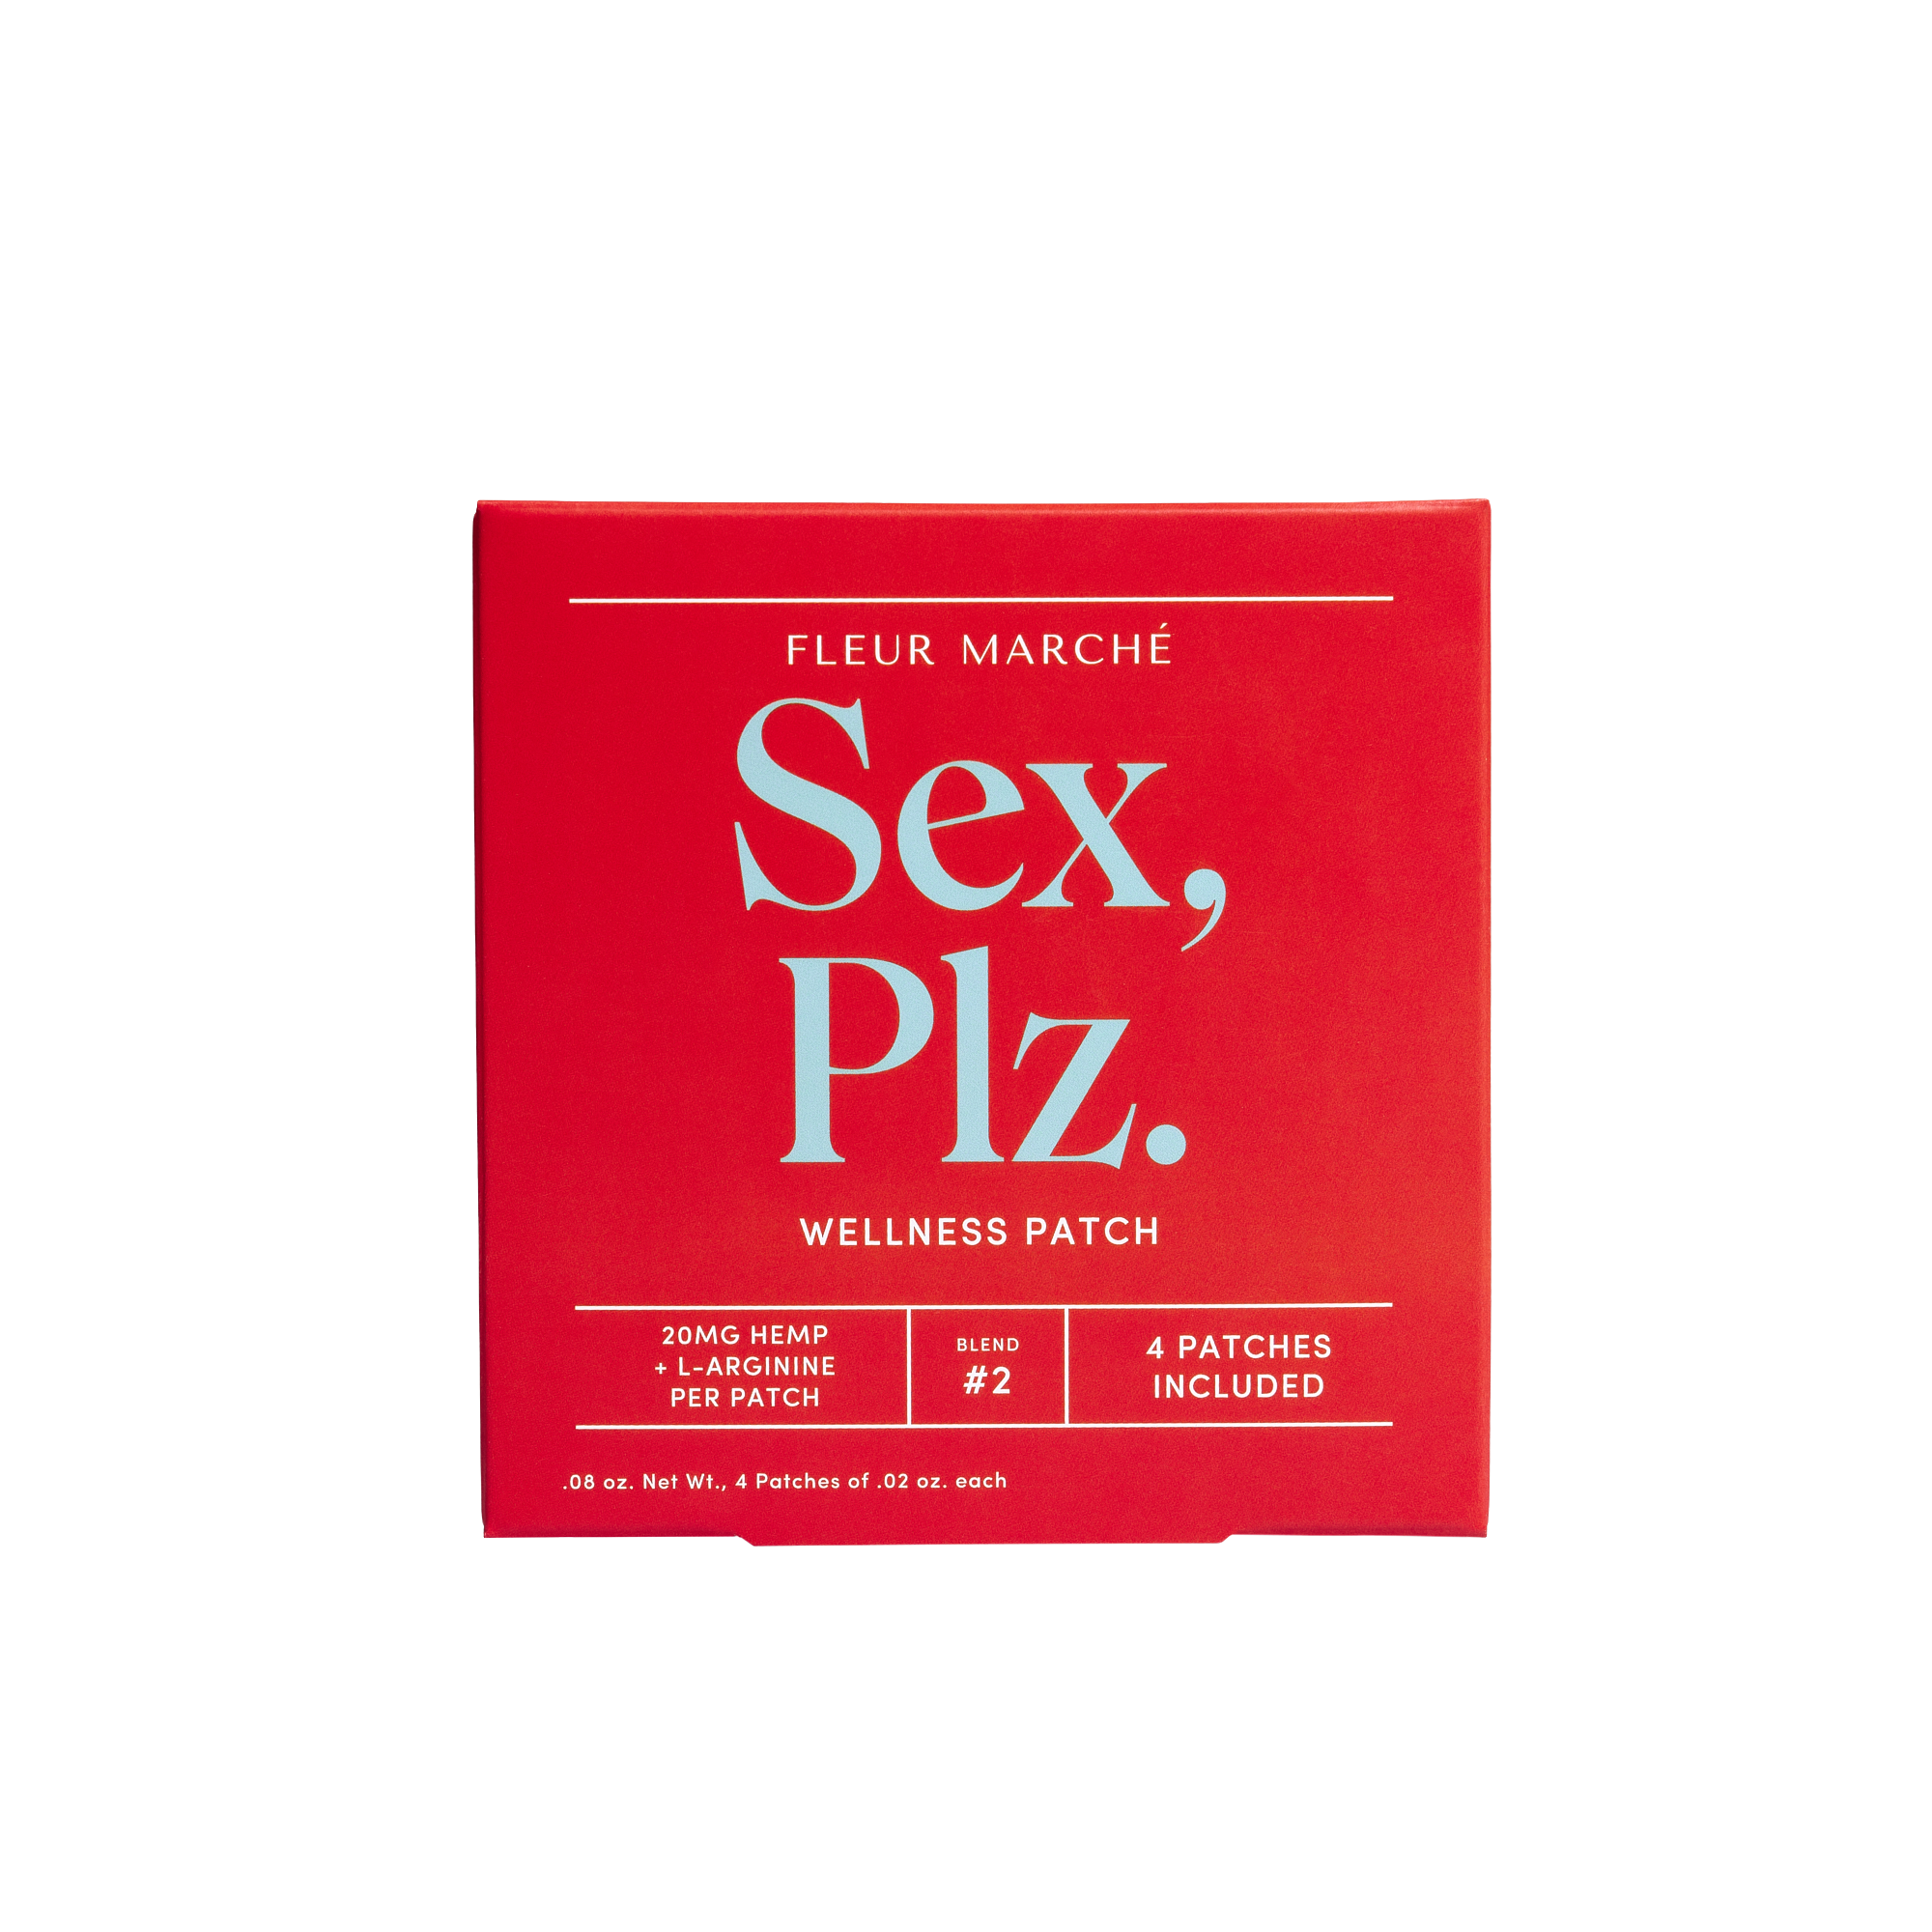 Wholesale Sex, Plz. Multipack